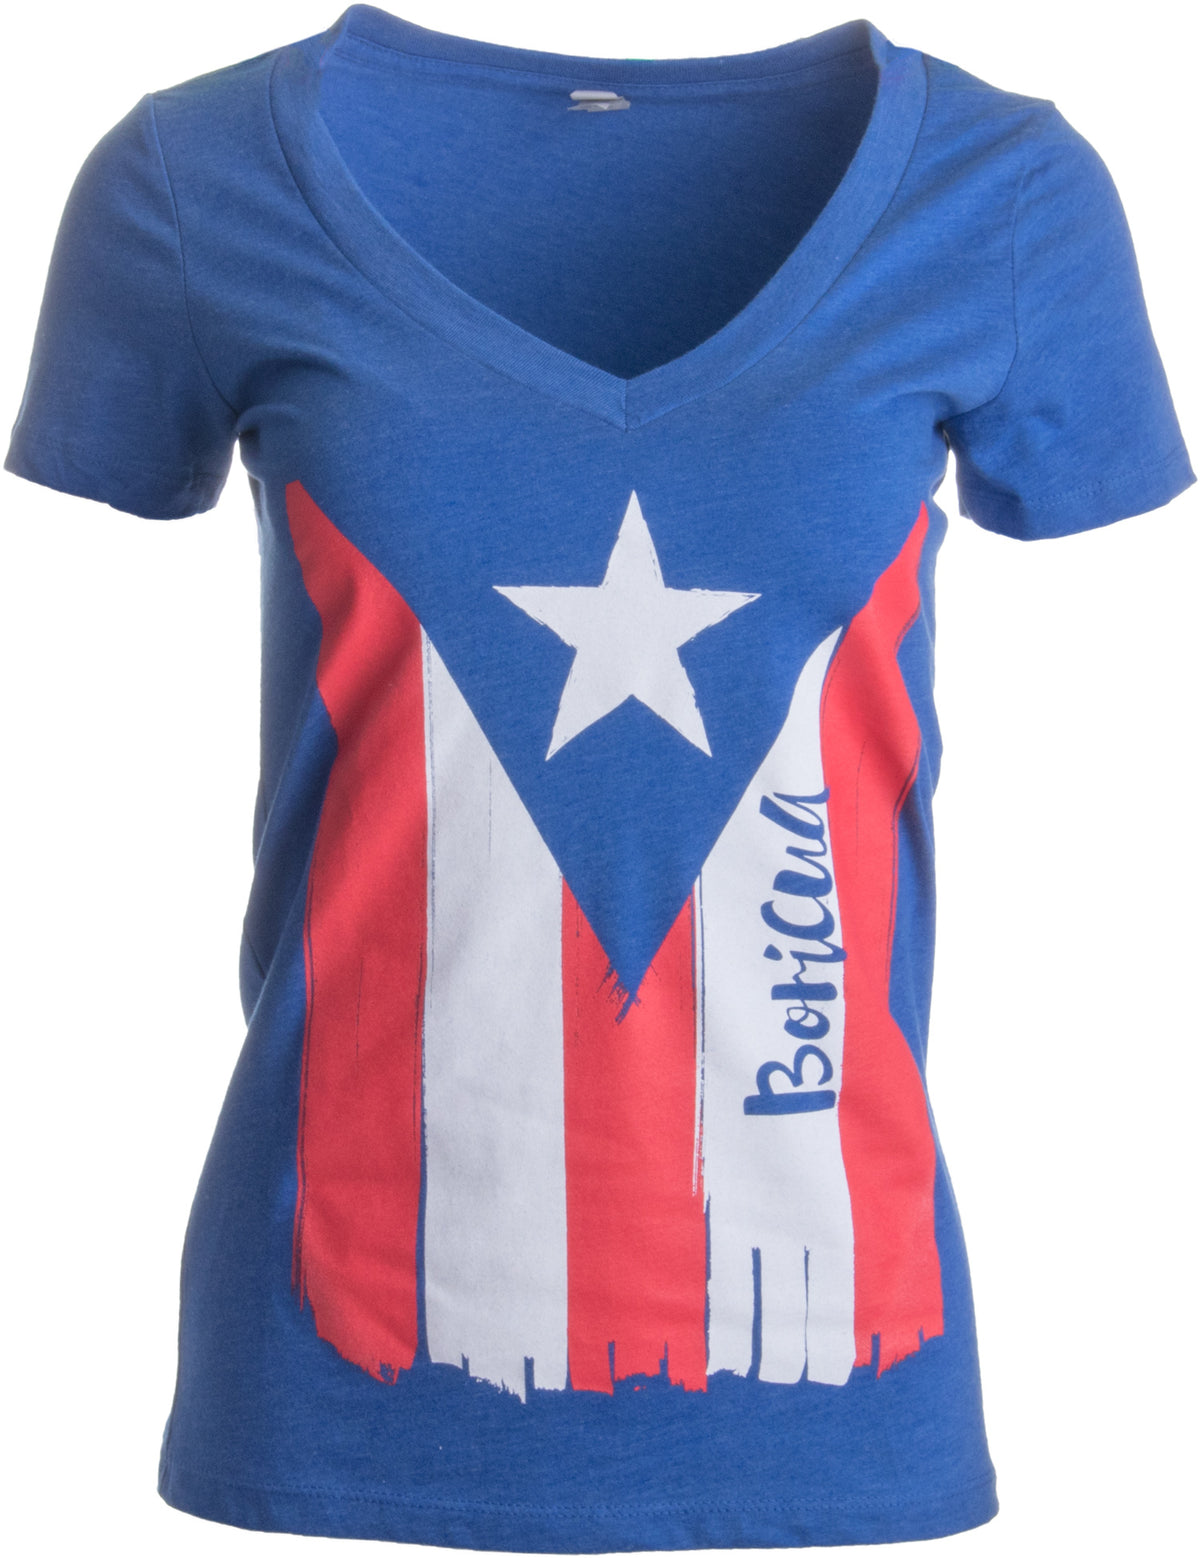 BORICUA | Cute PR Puerto Rican Pride, Nuyorican Flag Ladies' Rico V-neck T-shirt